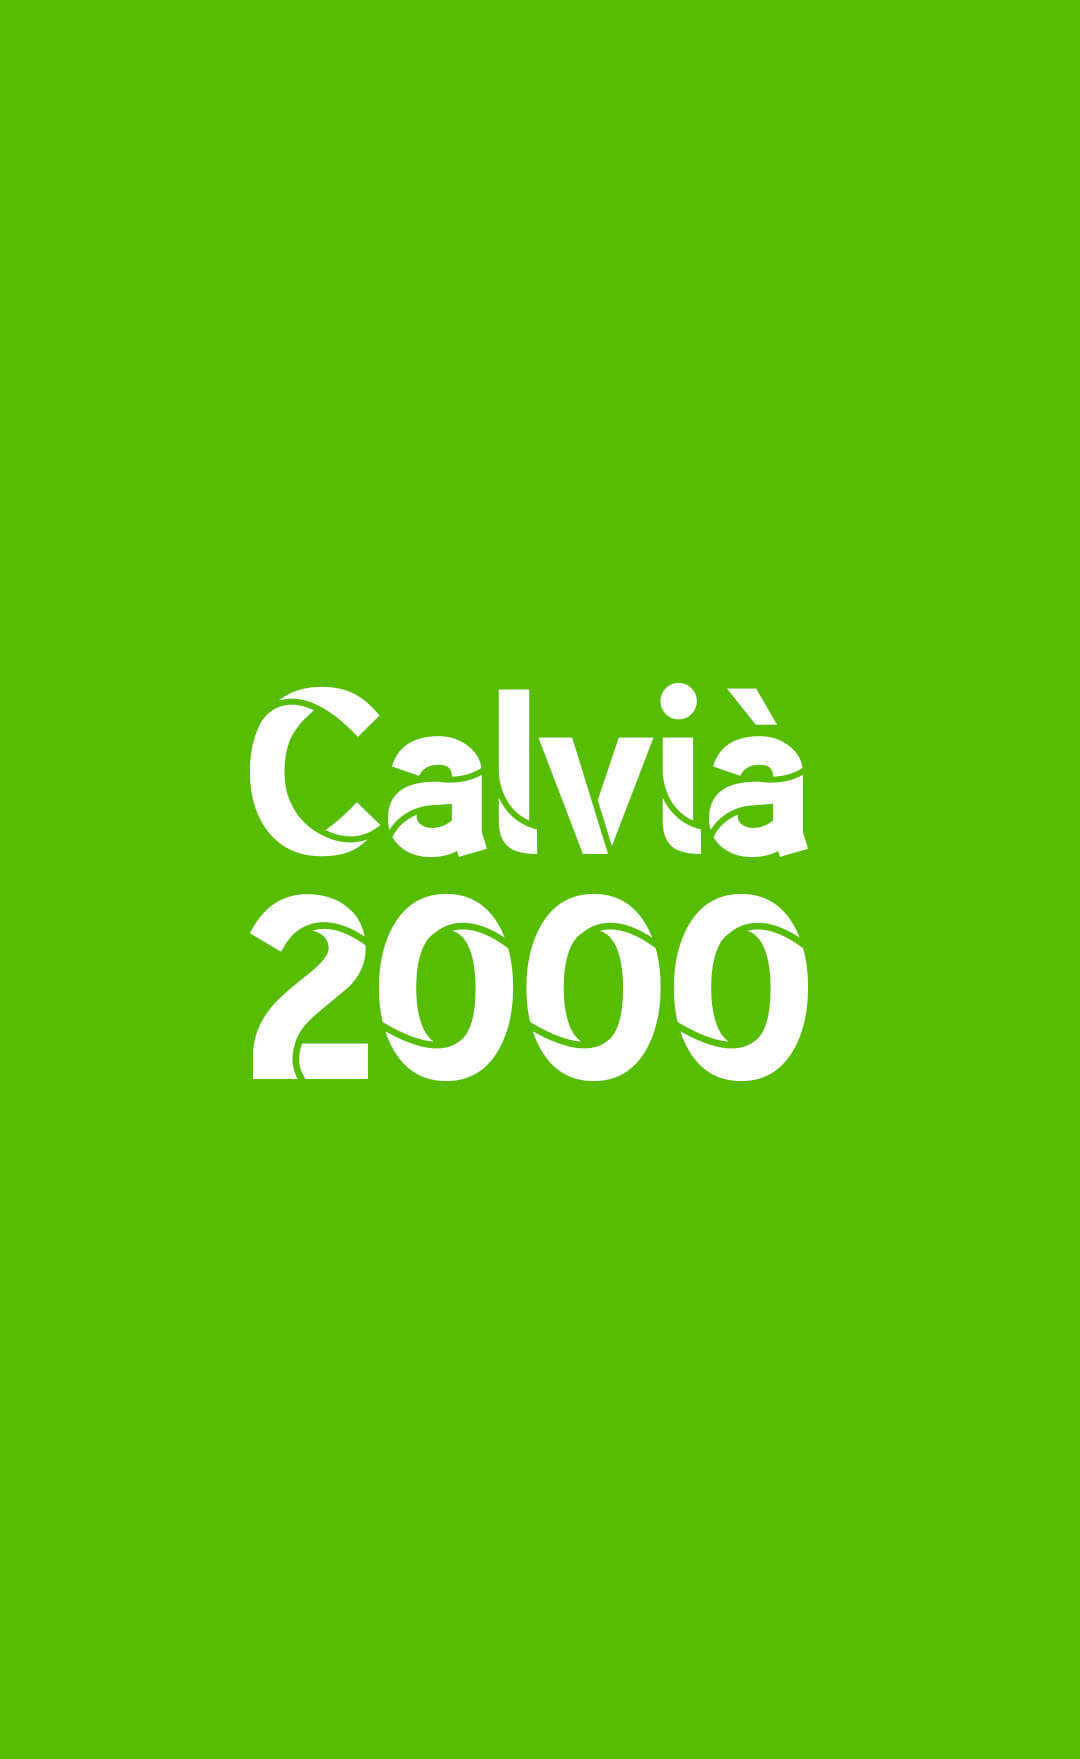 calvia2000-identidad-drbb.studio-2